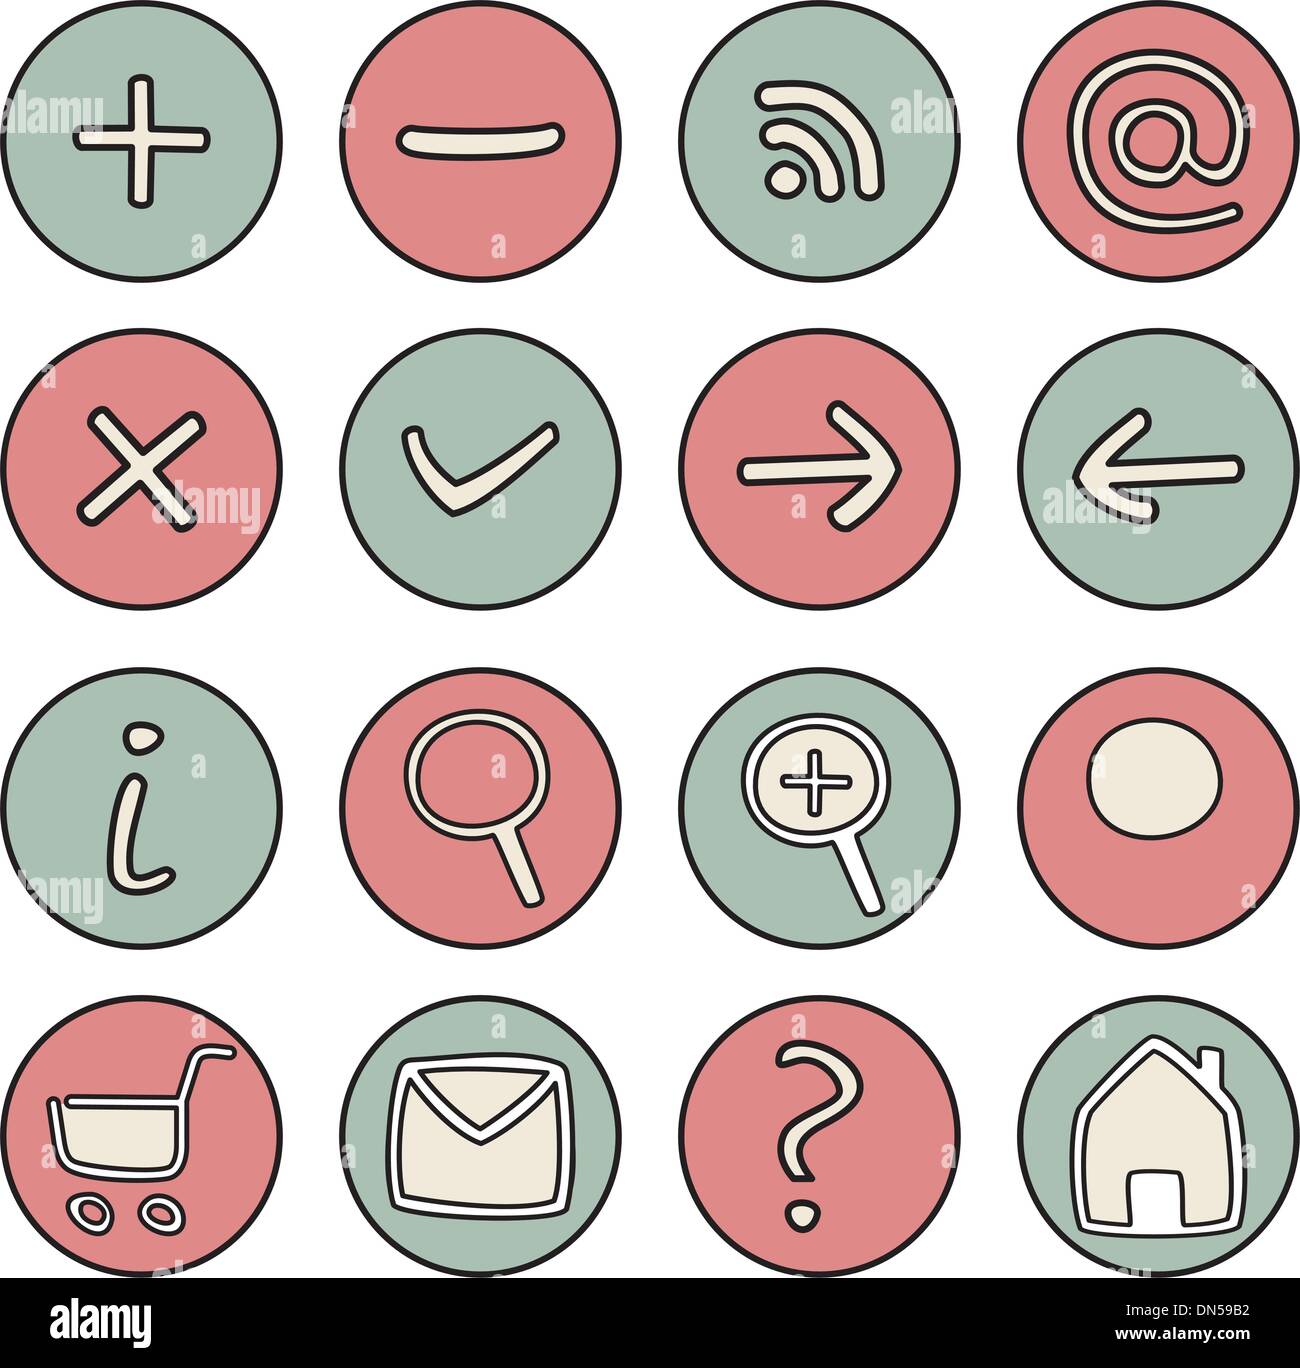 Vektor-Icons oder Buttons - tools Doodle Web Symbole. Website Design-rosa und grün Elemente isoliert auf weißem Hintergrund Stock Vektor